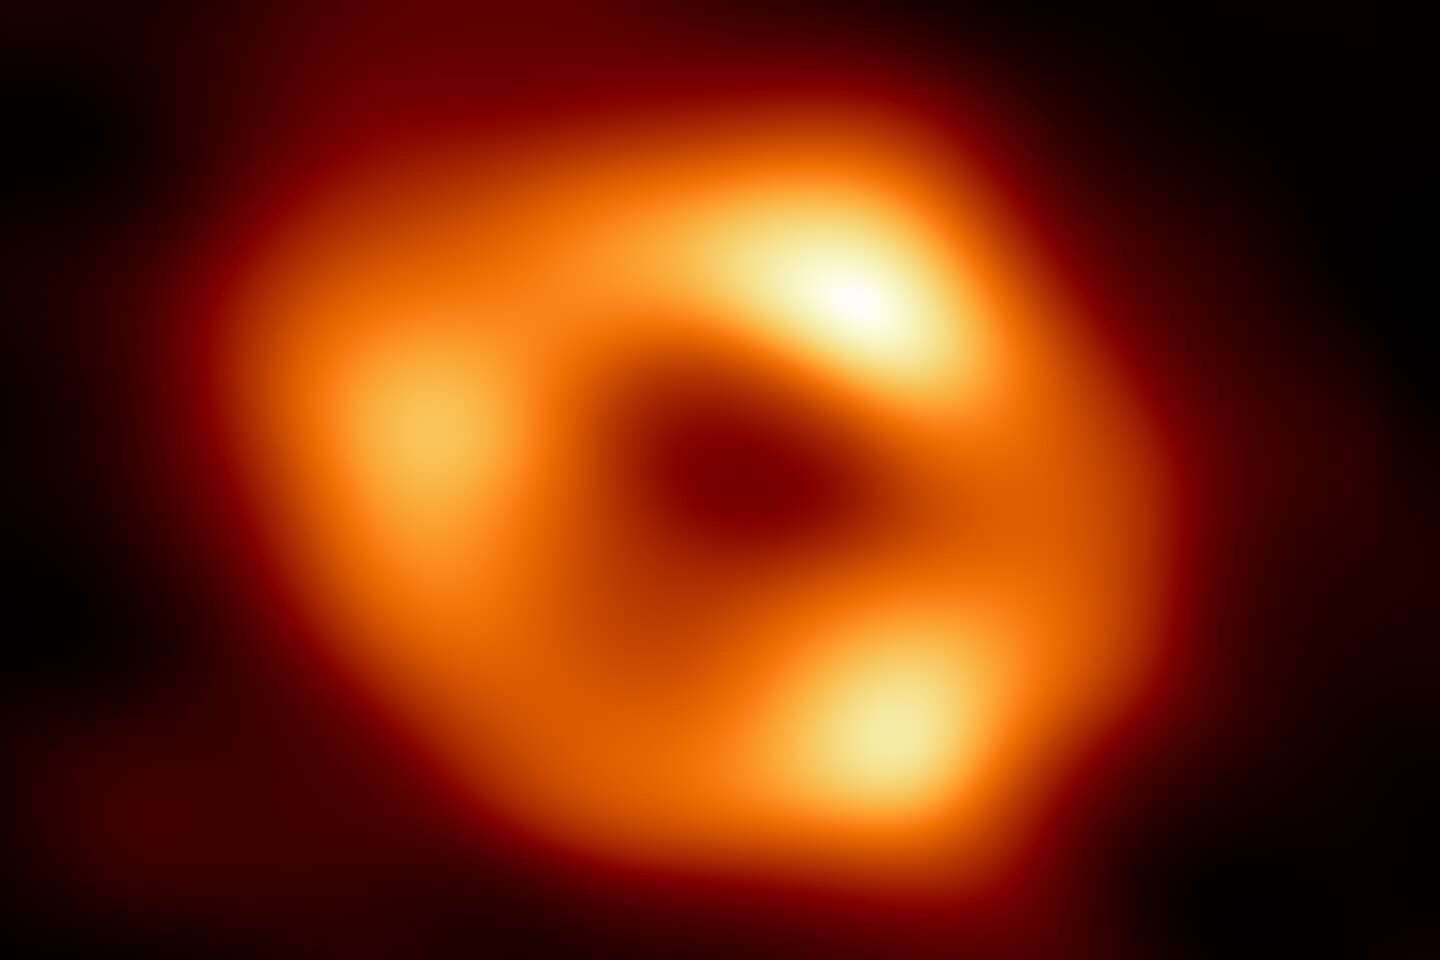 Het centrale zwarte gat van de Melkweg is eindelijk onthuld